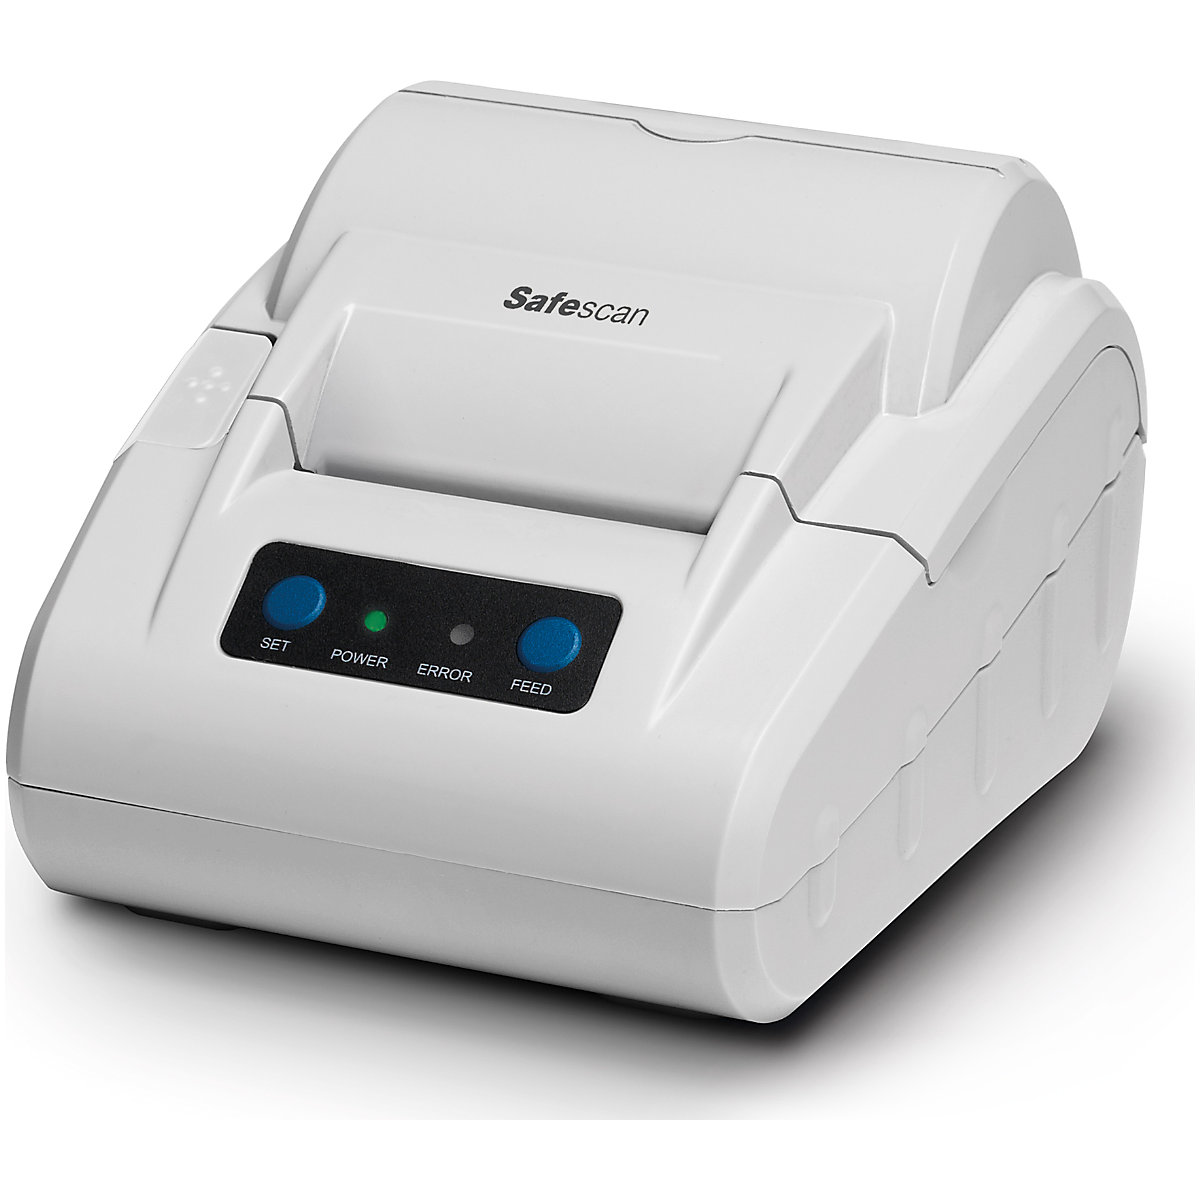 Impressora térmica – Safescan, para contadores de moedas 1250, 1450, máquinas de contar dinheiro 2265, 2665-S, 2685-S, 2985-SX e balança conta-dinheiro 6185, TP-230